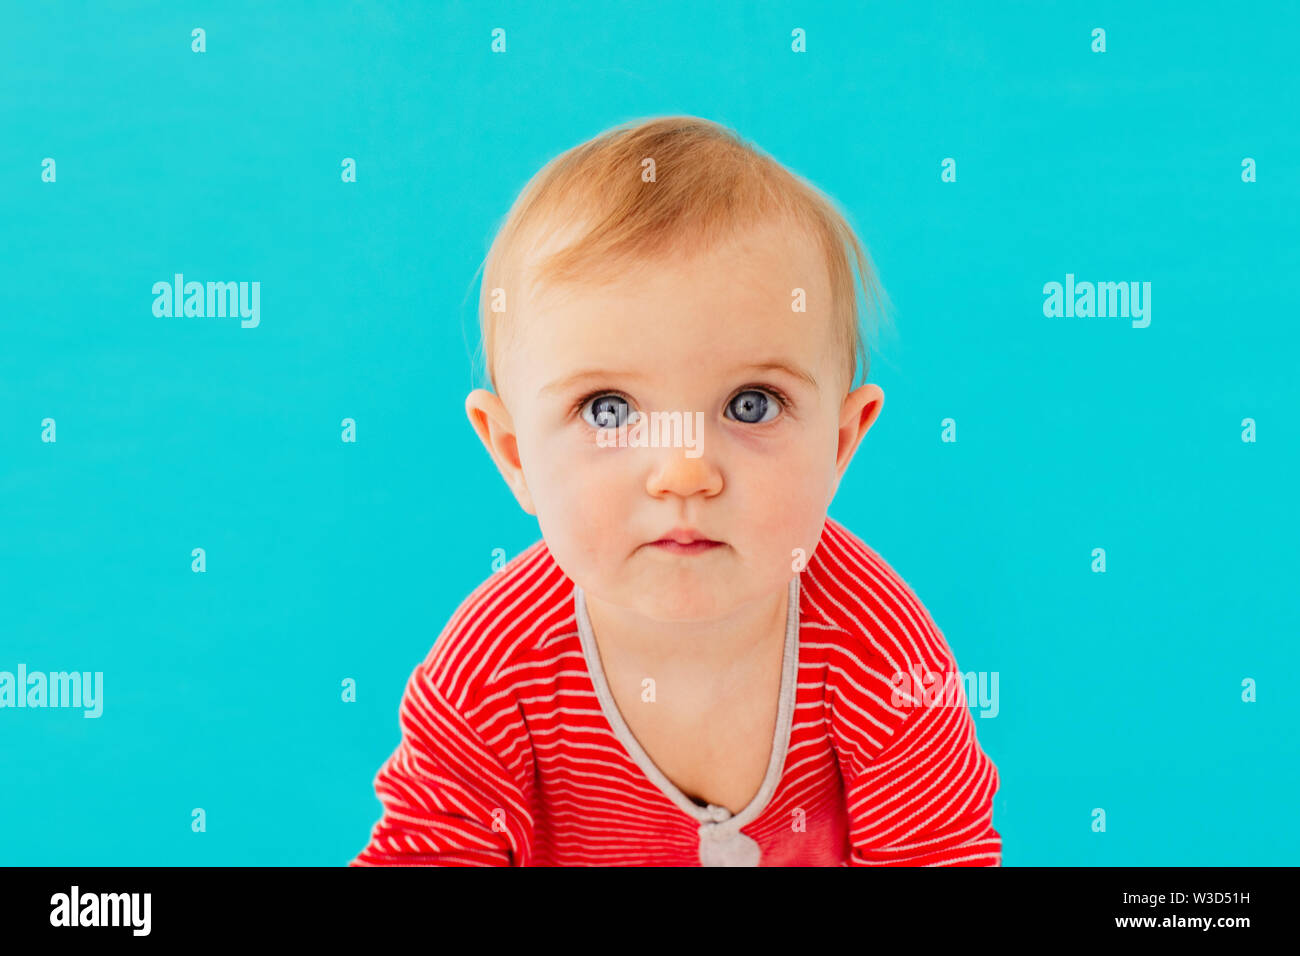 Immagine di sweet baby, closeup Ritratto di bambino Foto Stock